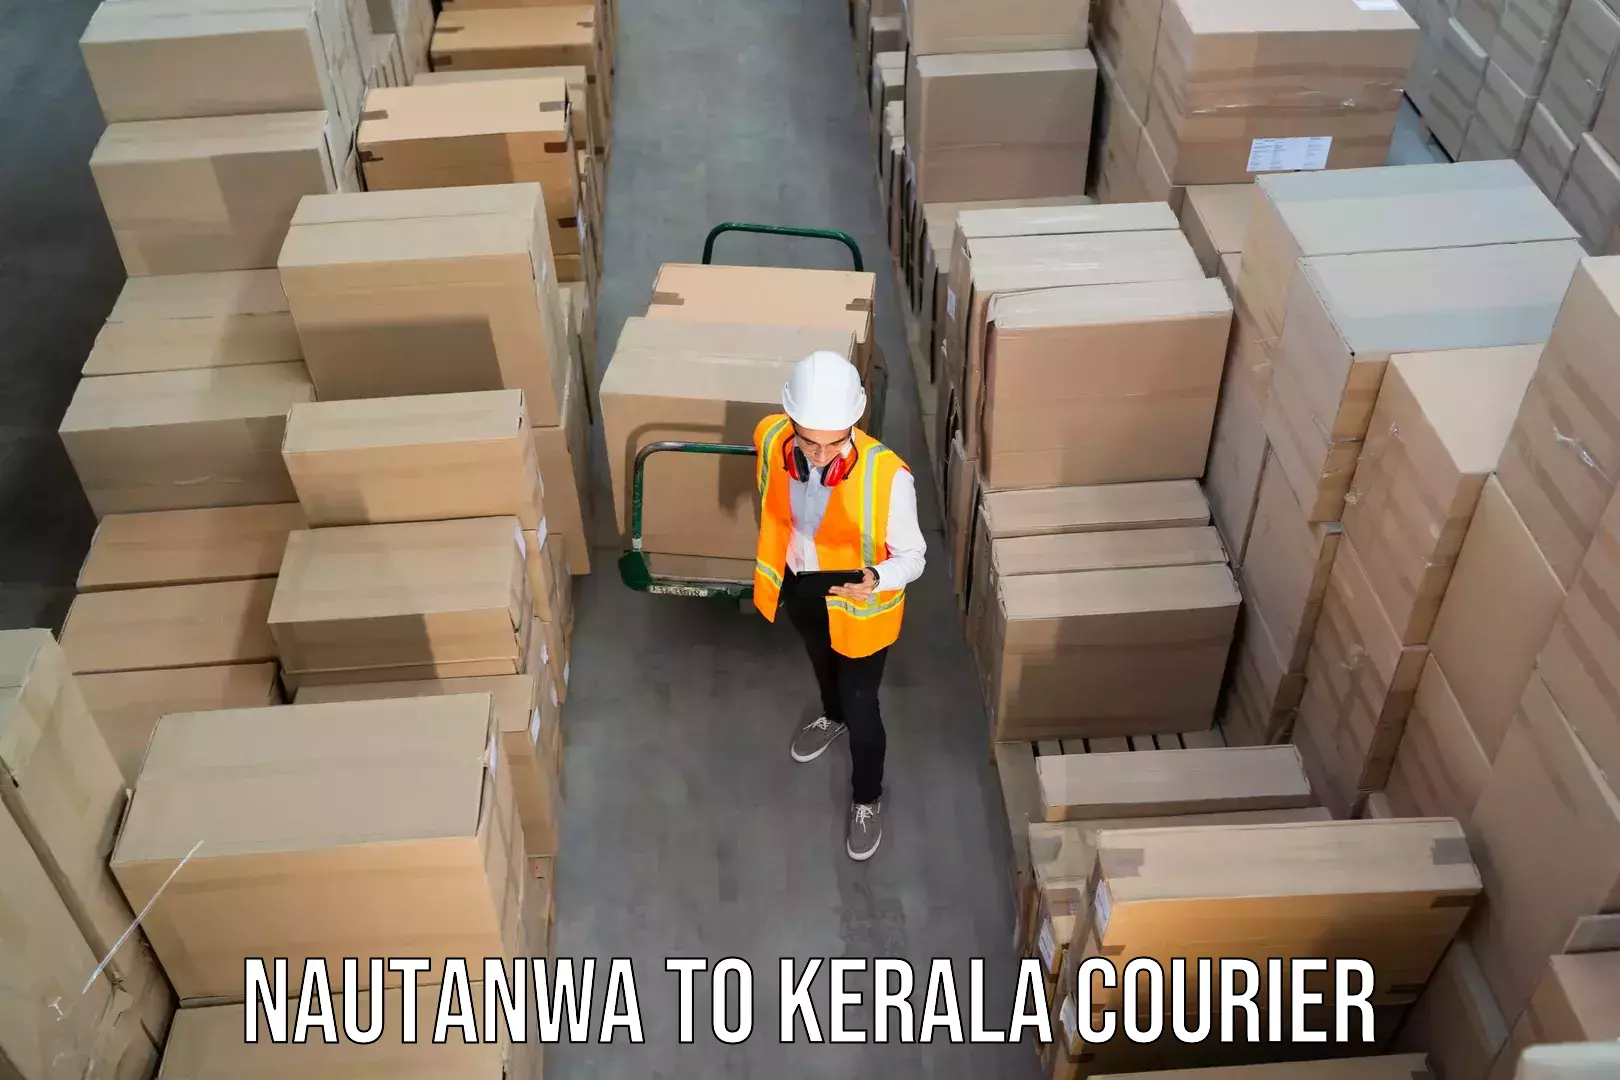 Discount courier rates Nautanwa to Elamakkara